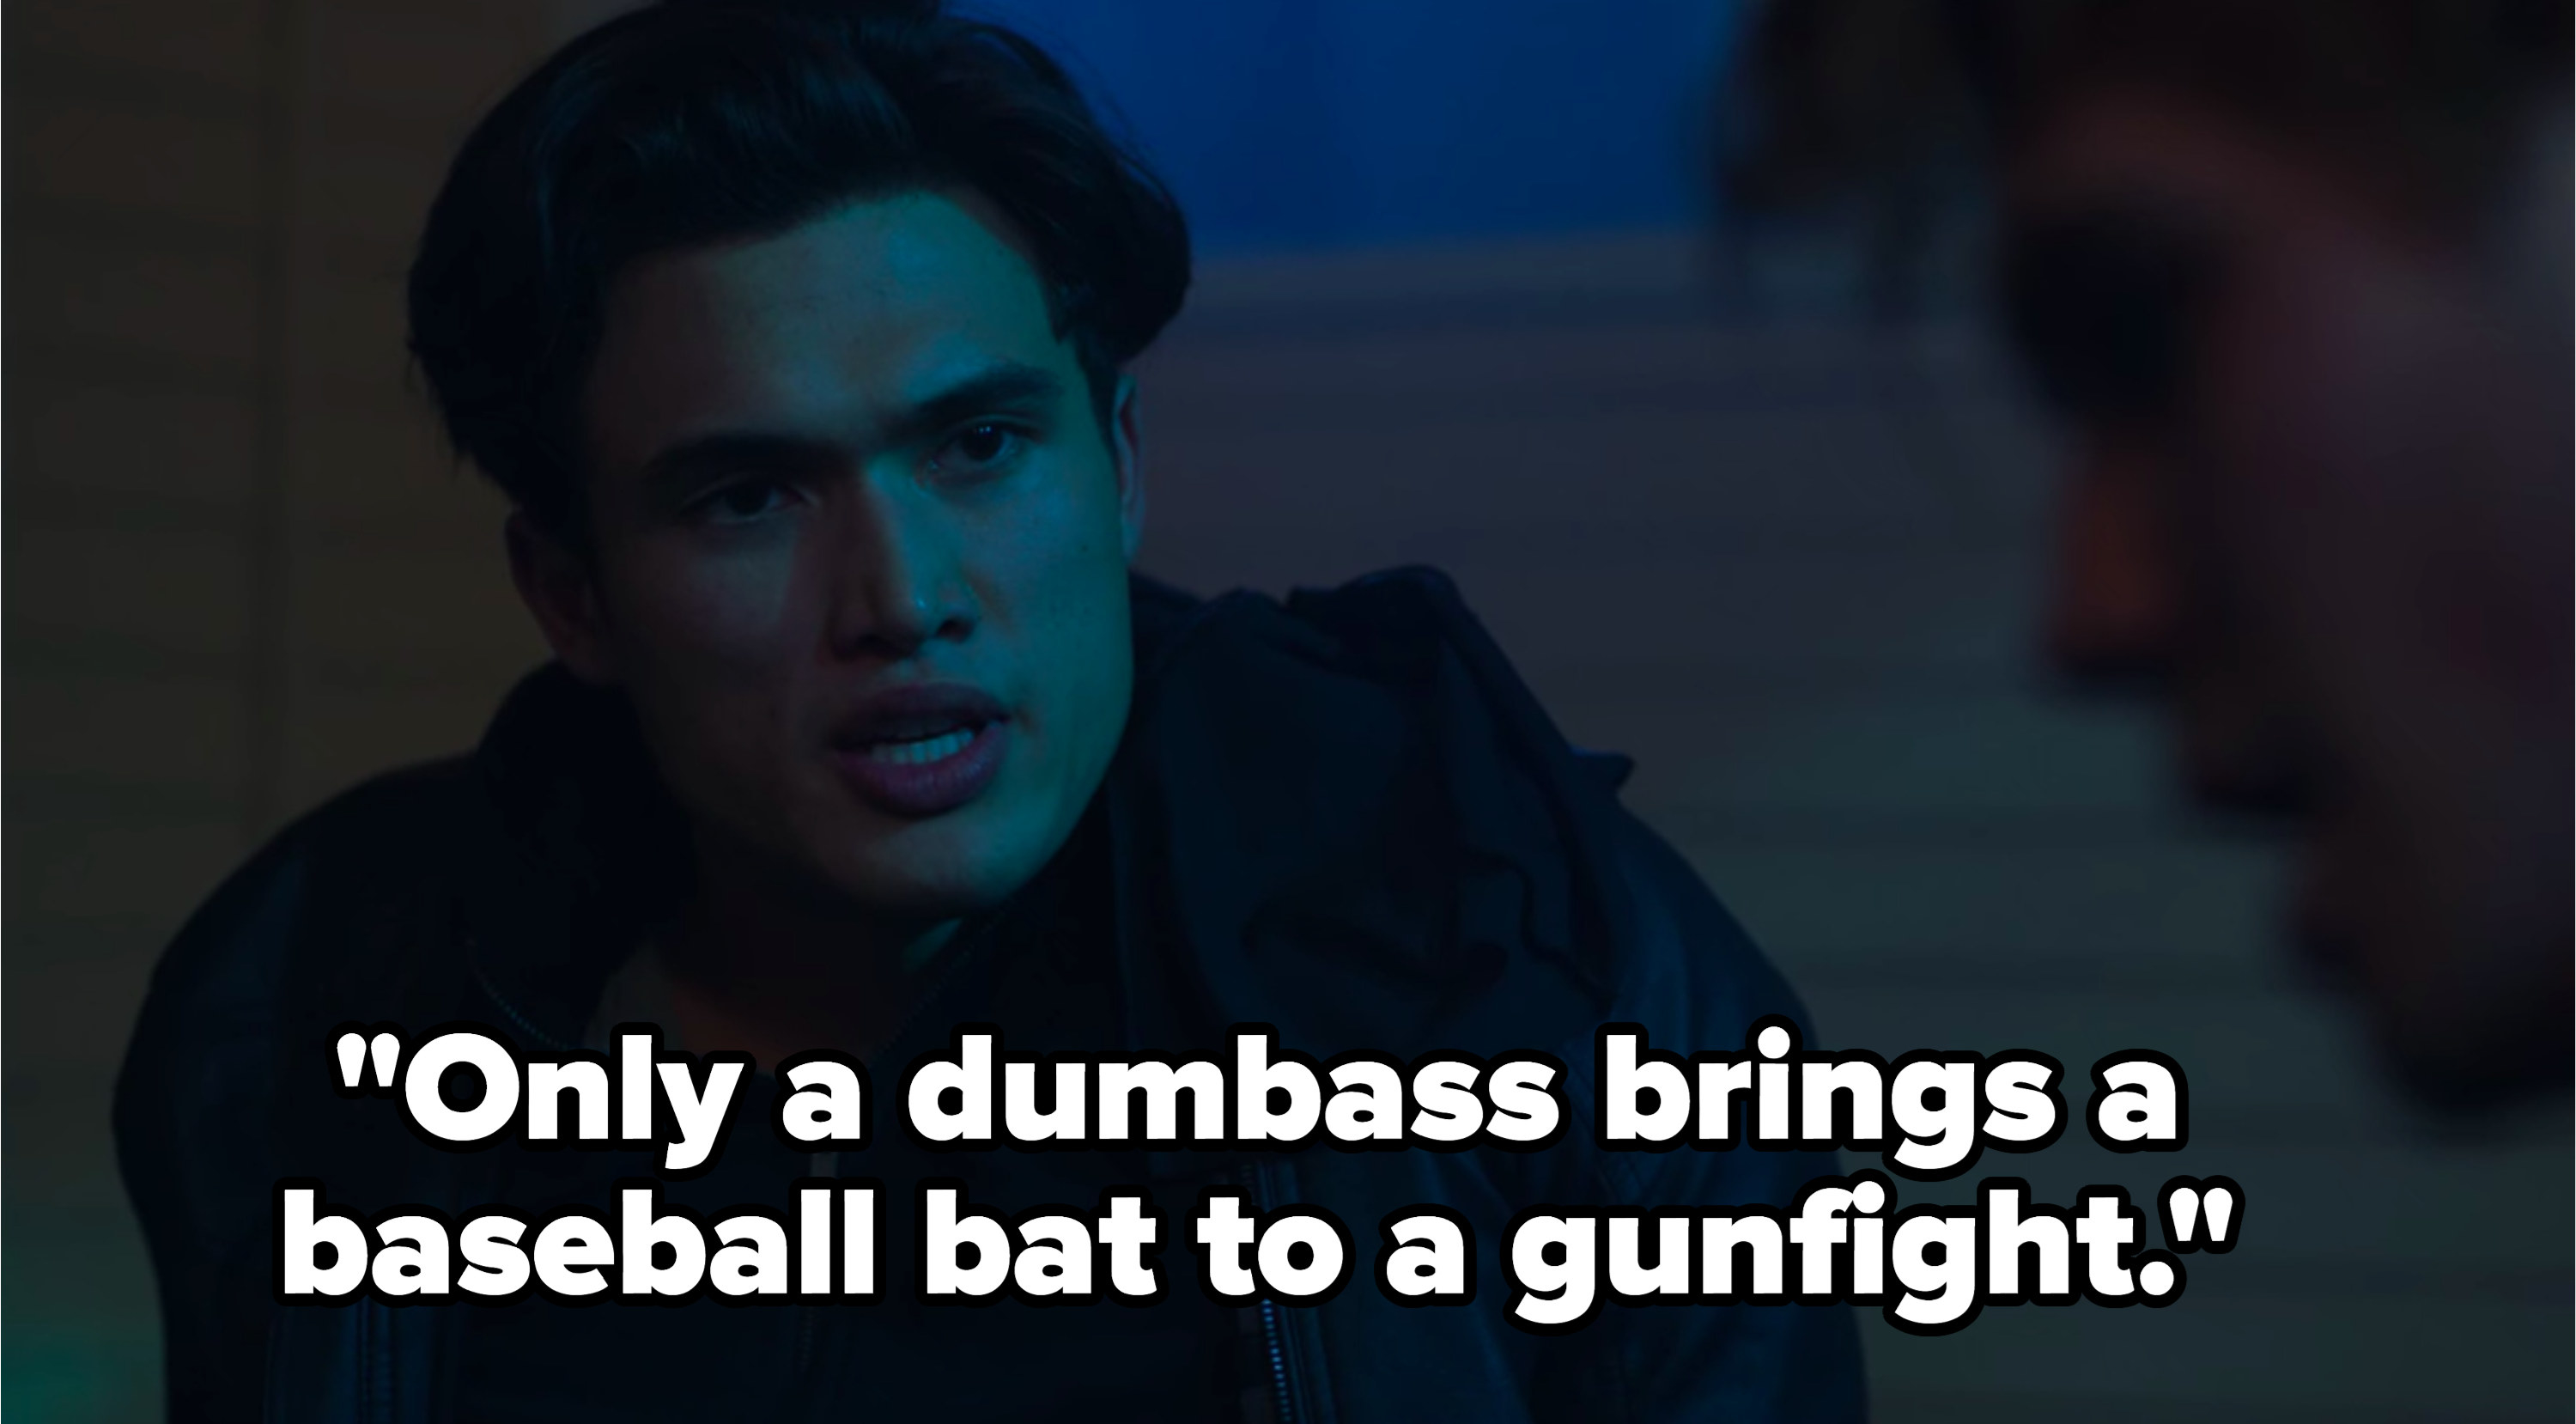 Reggie: &quot;Only a dumbass brings a baseball bat to a gunfight&quot;